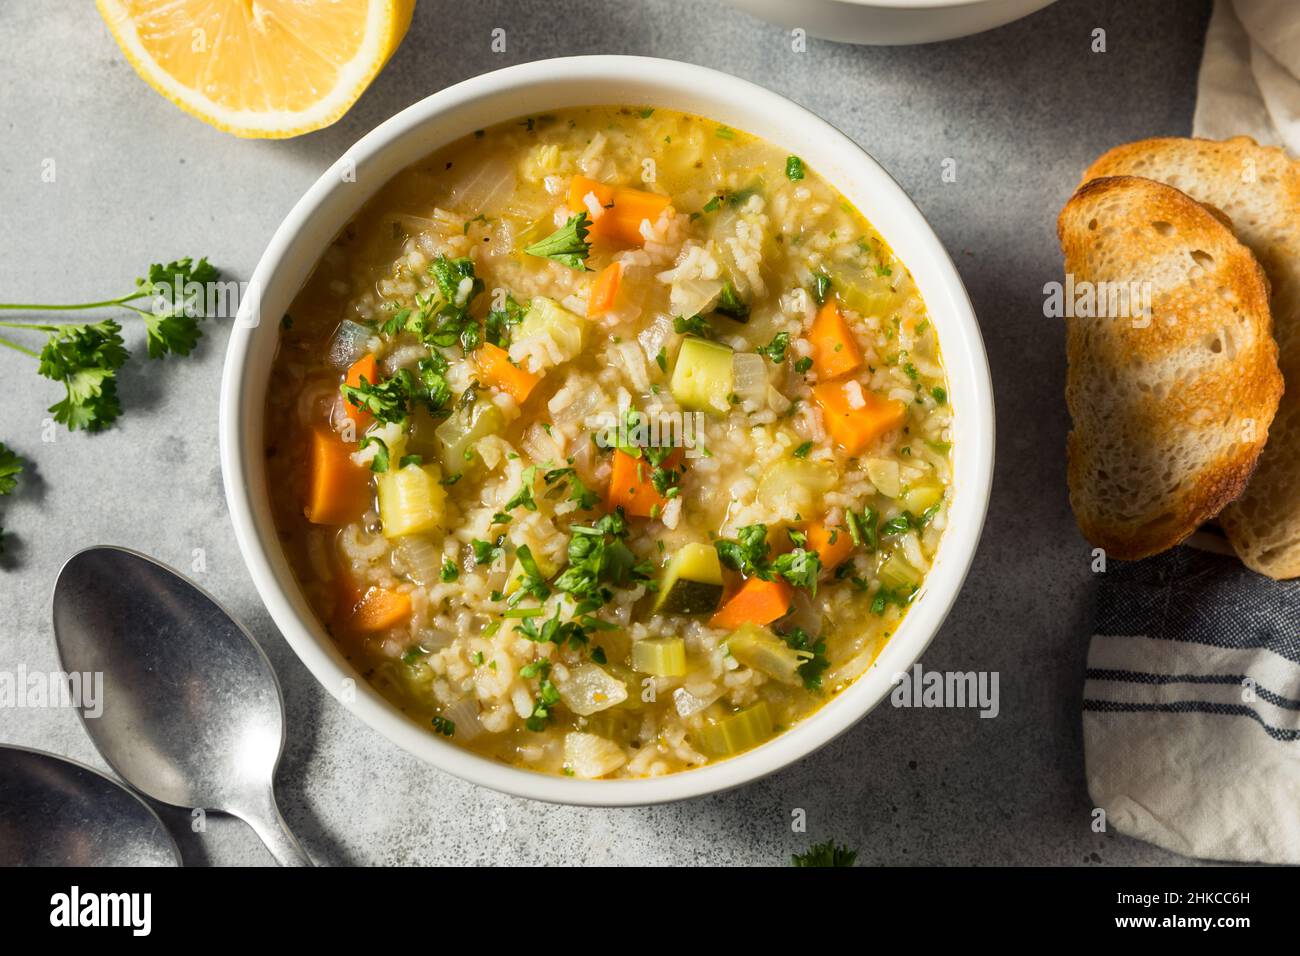 Zuppa di riso al limone sana fatta in casa con carote e sedano Foto Stock